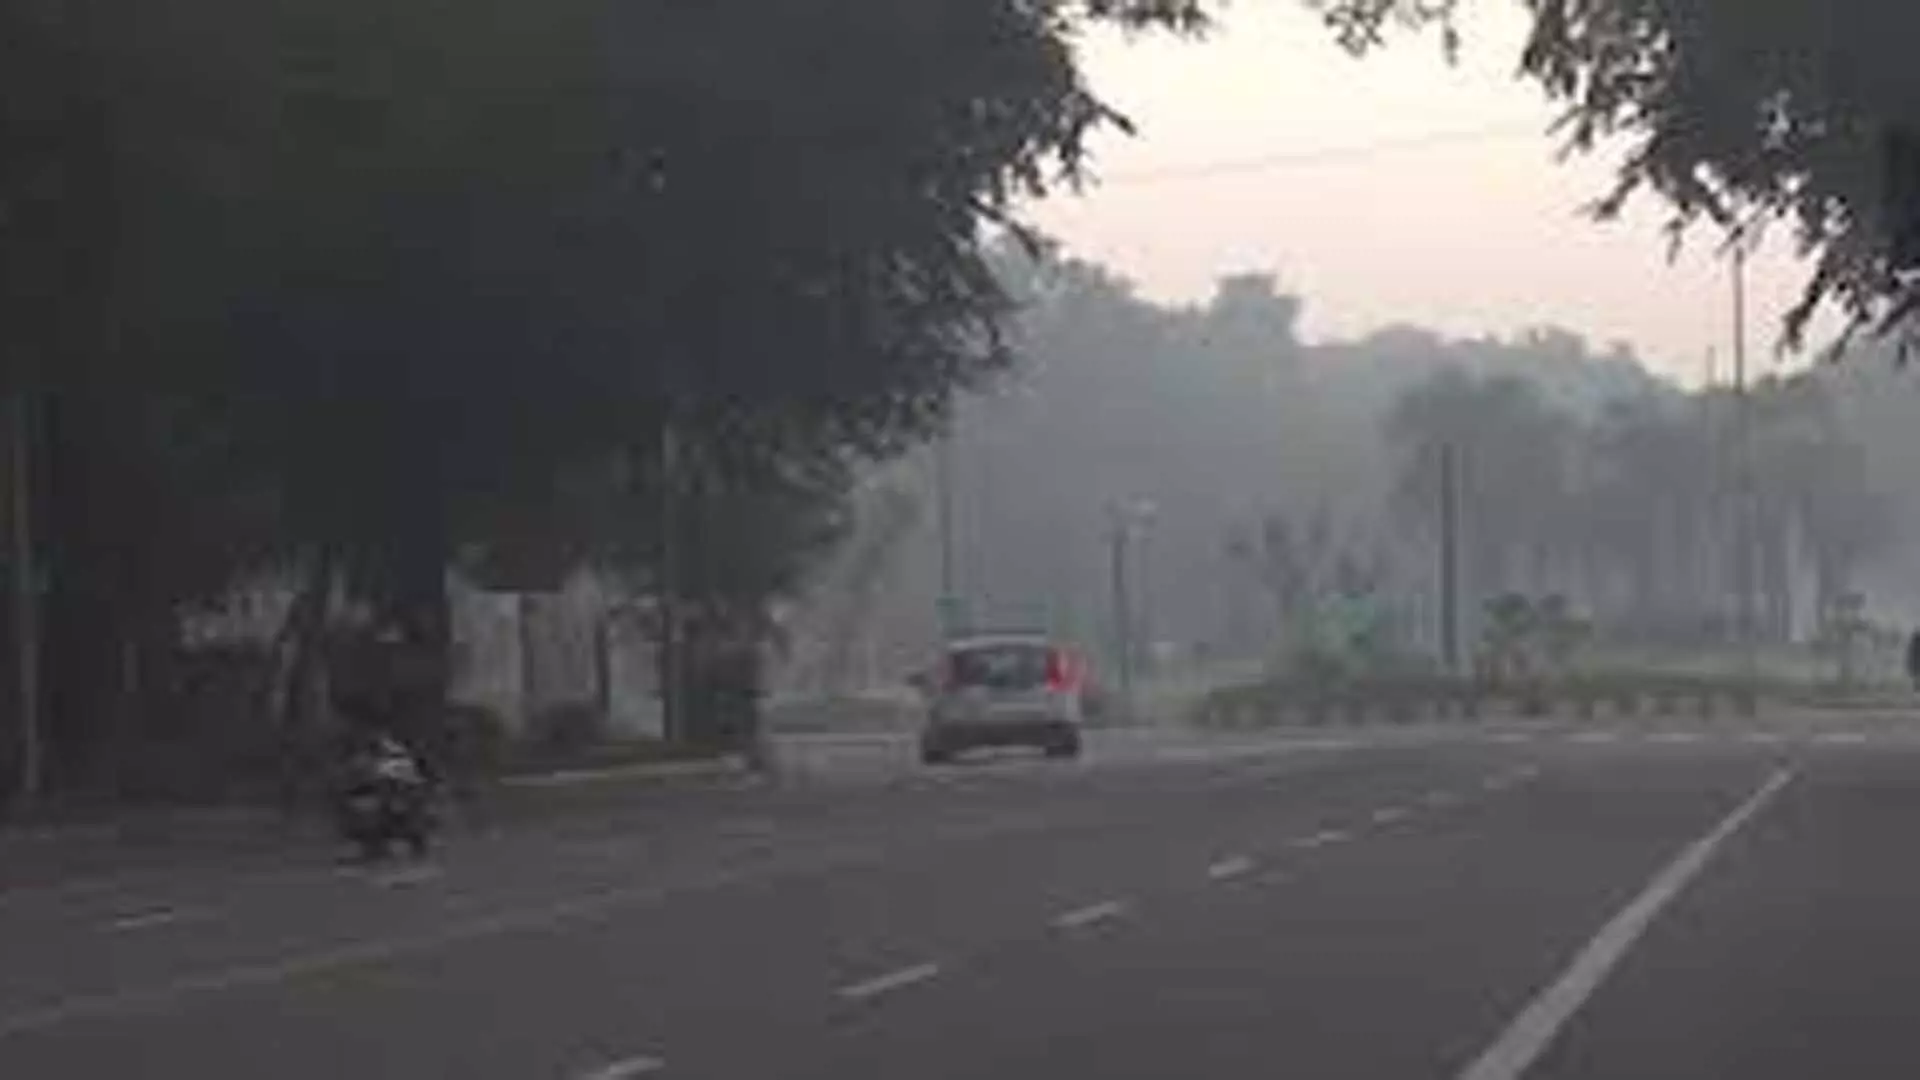 Delhi: बारिश के कारण दिल्ली में वायु गुणवत्ता दूसरे दिन भी संतोषजनक रही